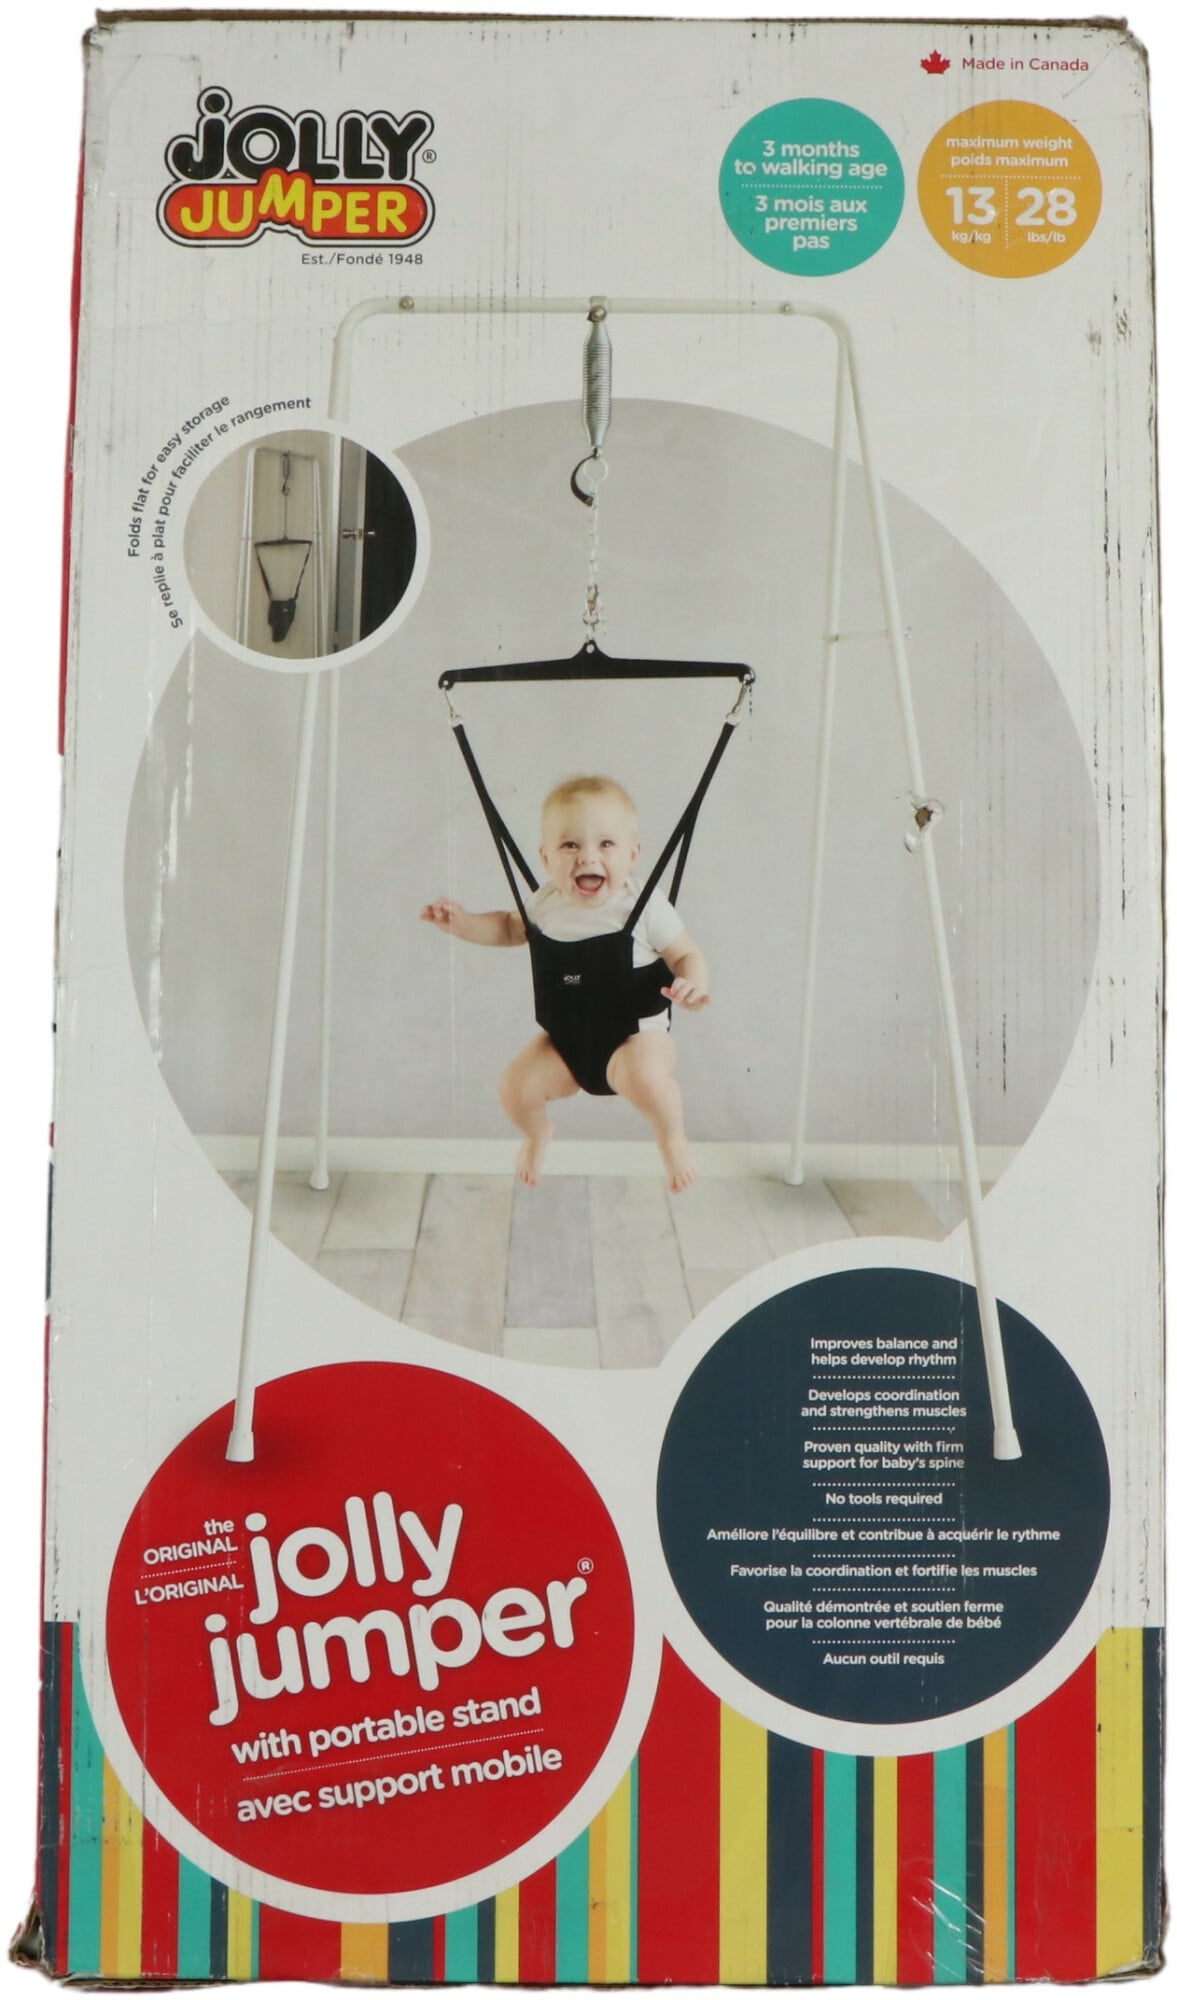 jolly jumper gift pack